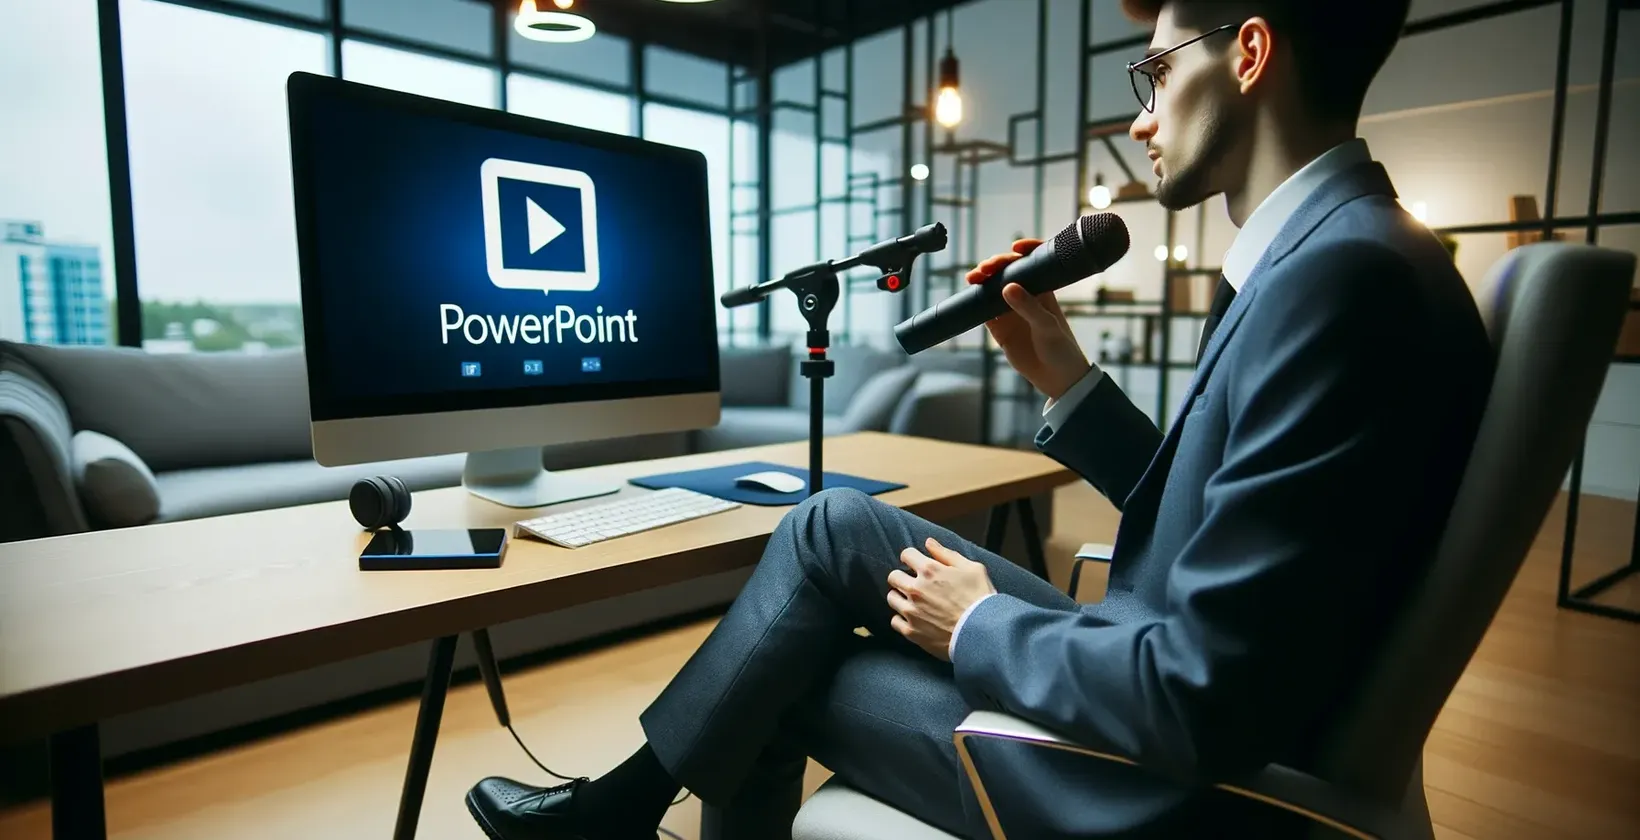 Mężczyzna w biurze z mikrofonem patrzy na monitor wyświetlający logo PowerPoint.